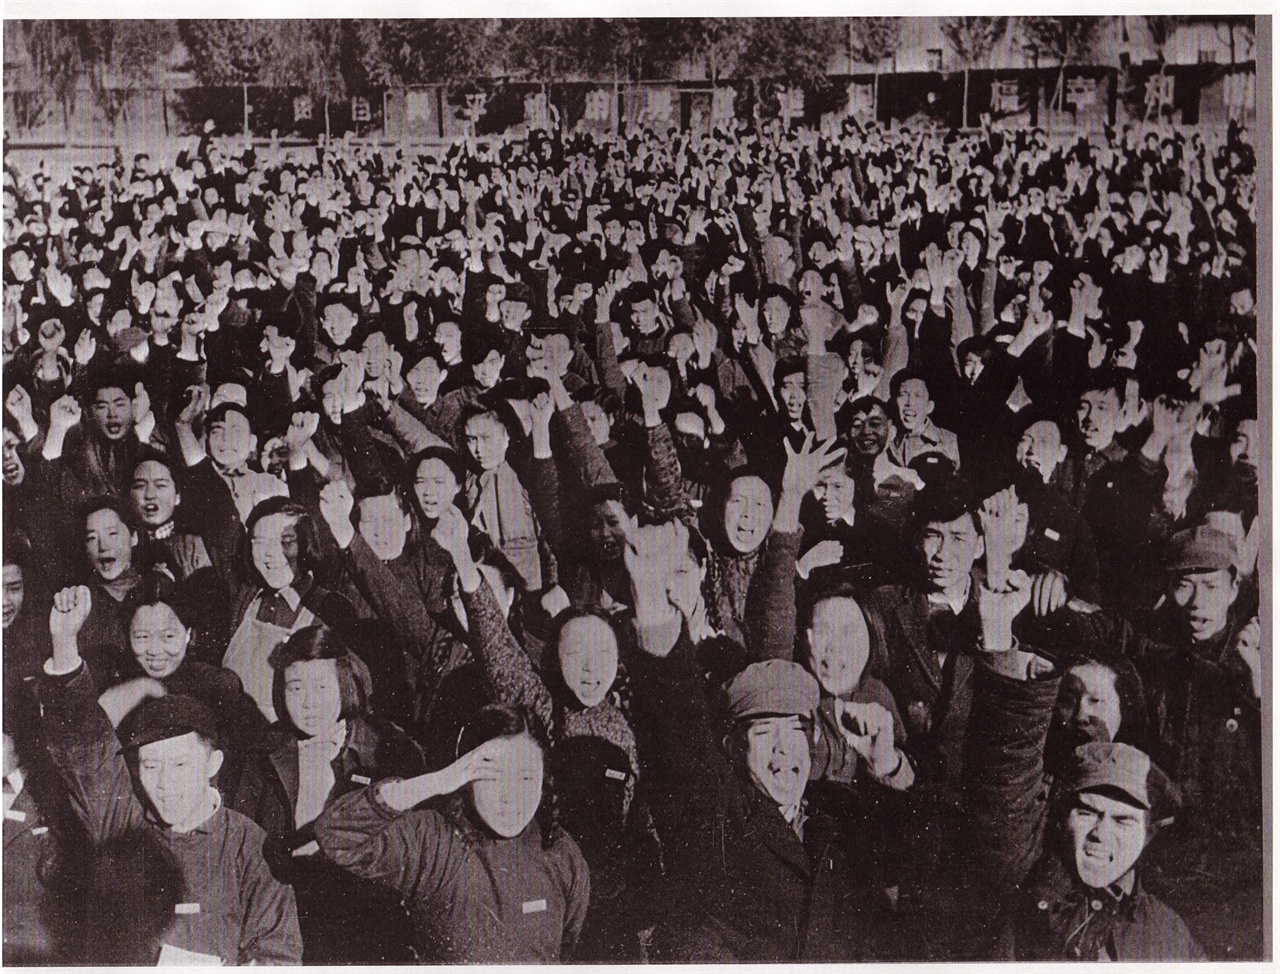  1950. 10. 베이징. 중국 북경대학교 학생들이 미군의 북진에 항의하는 군중집회를 열고 있다.